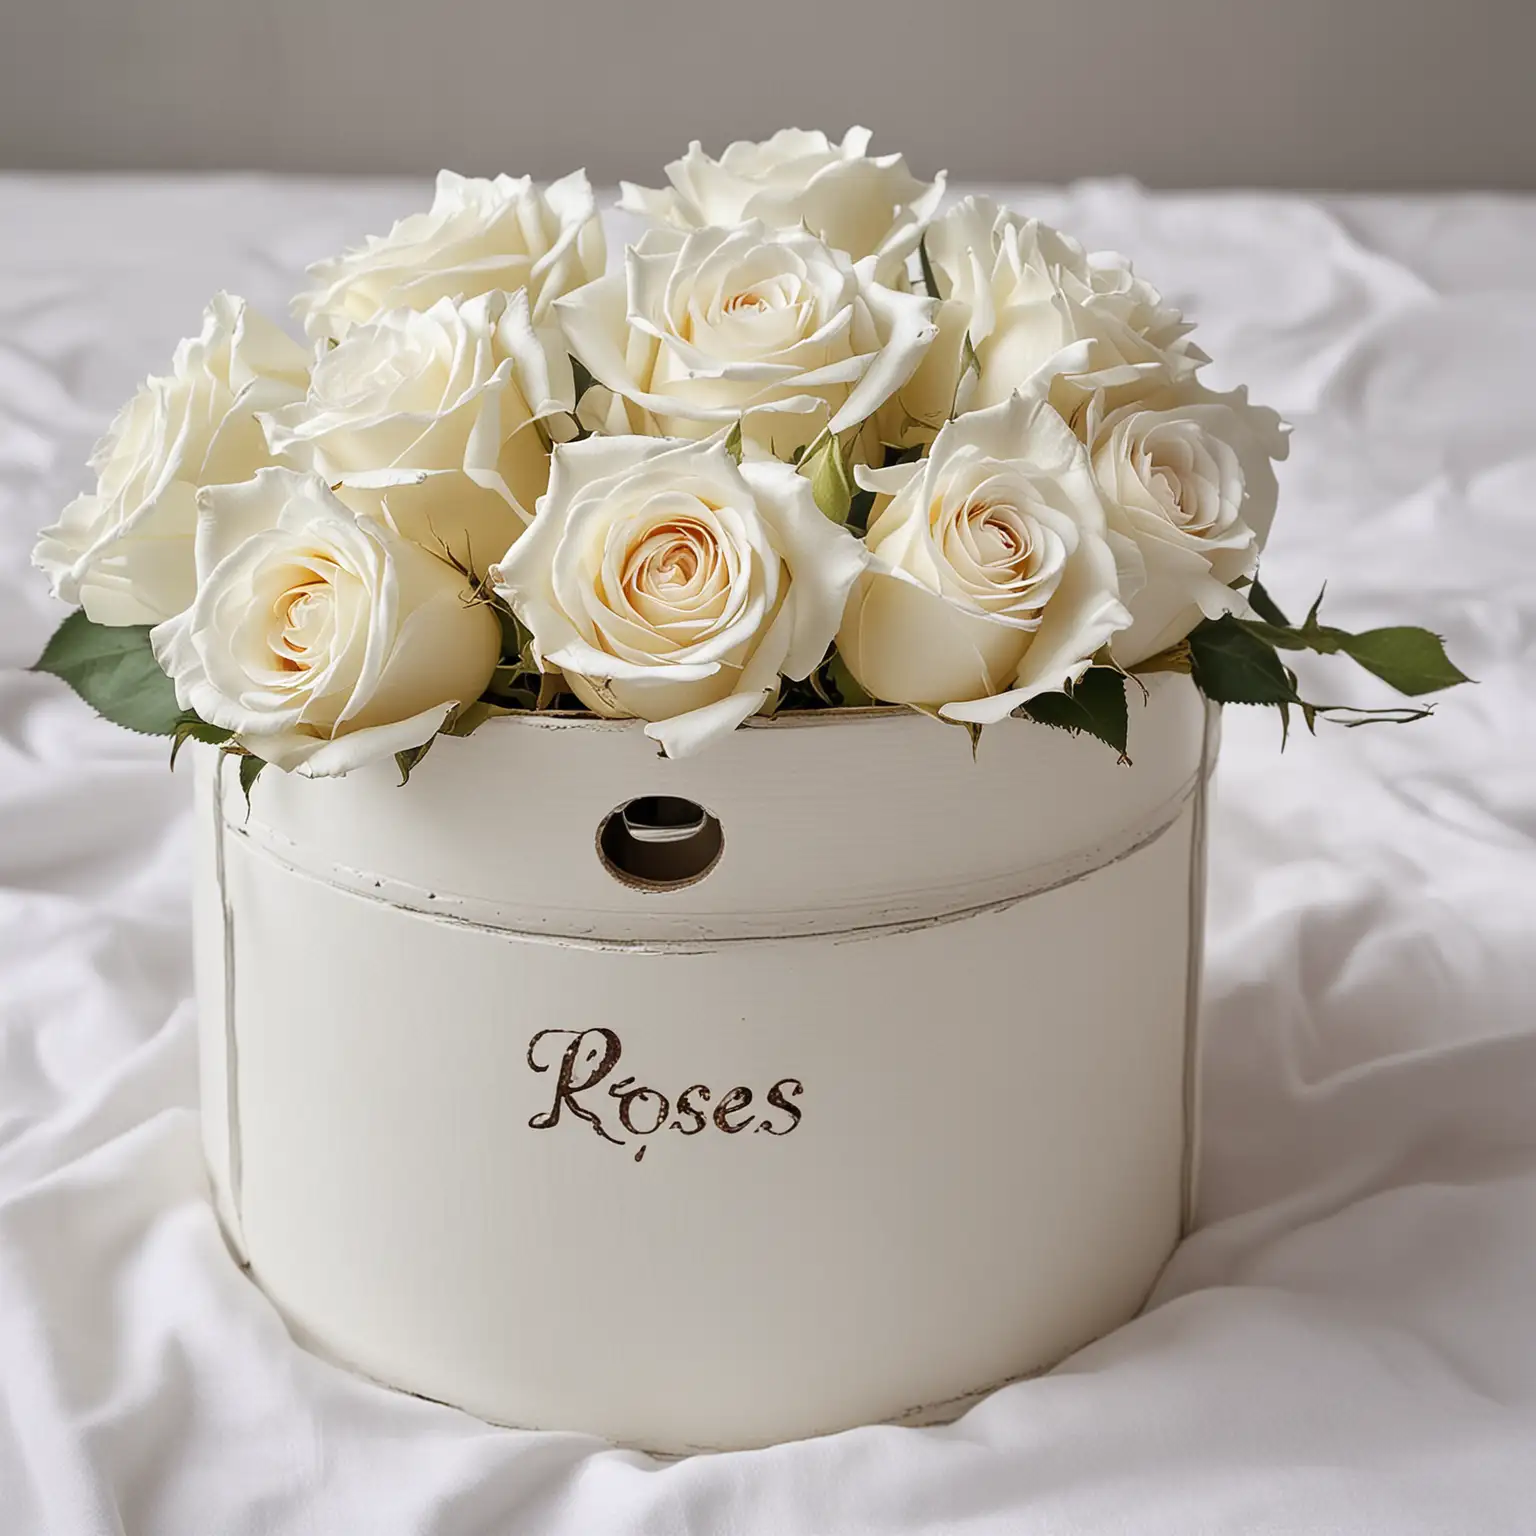 Elegant Arrangement of Closed White Roses